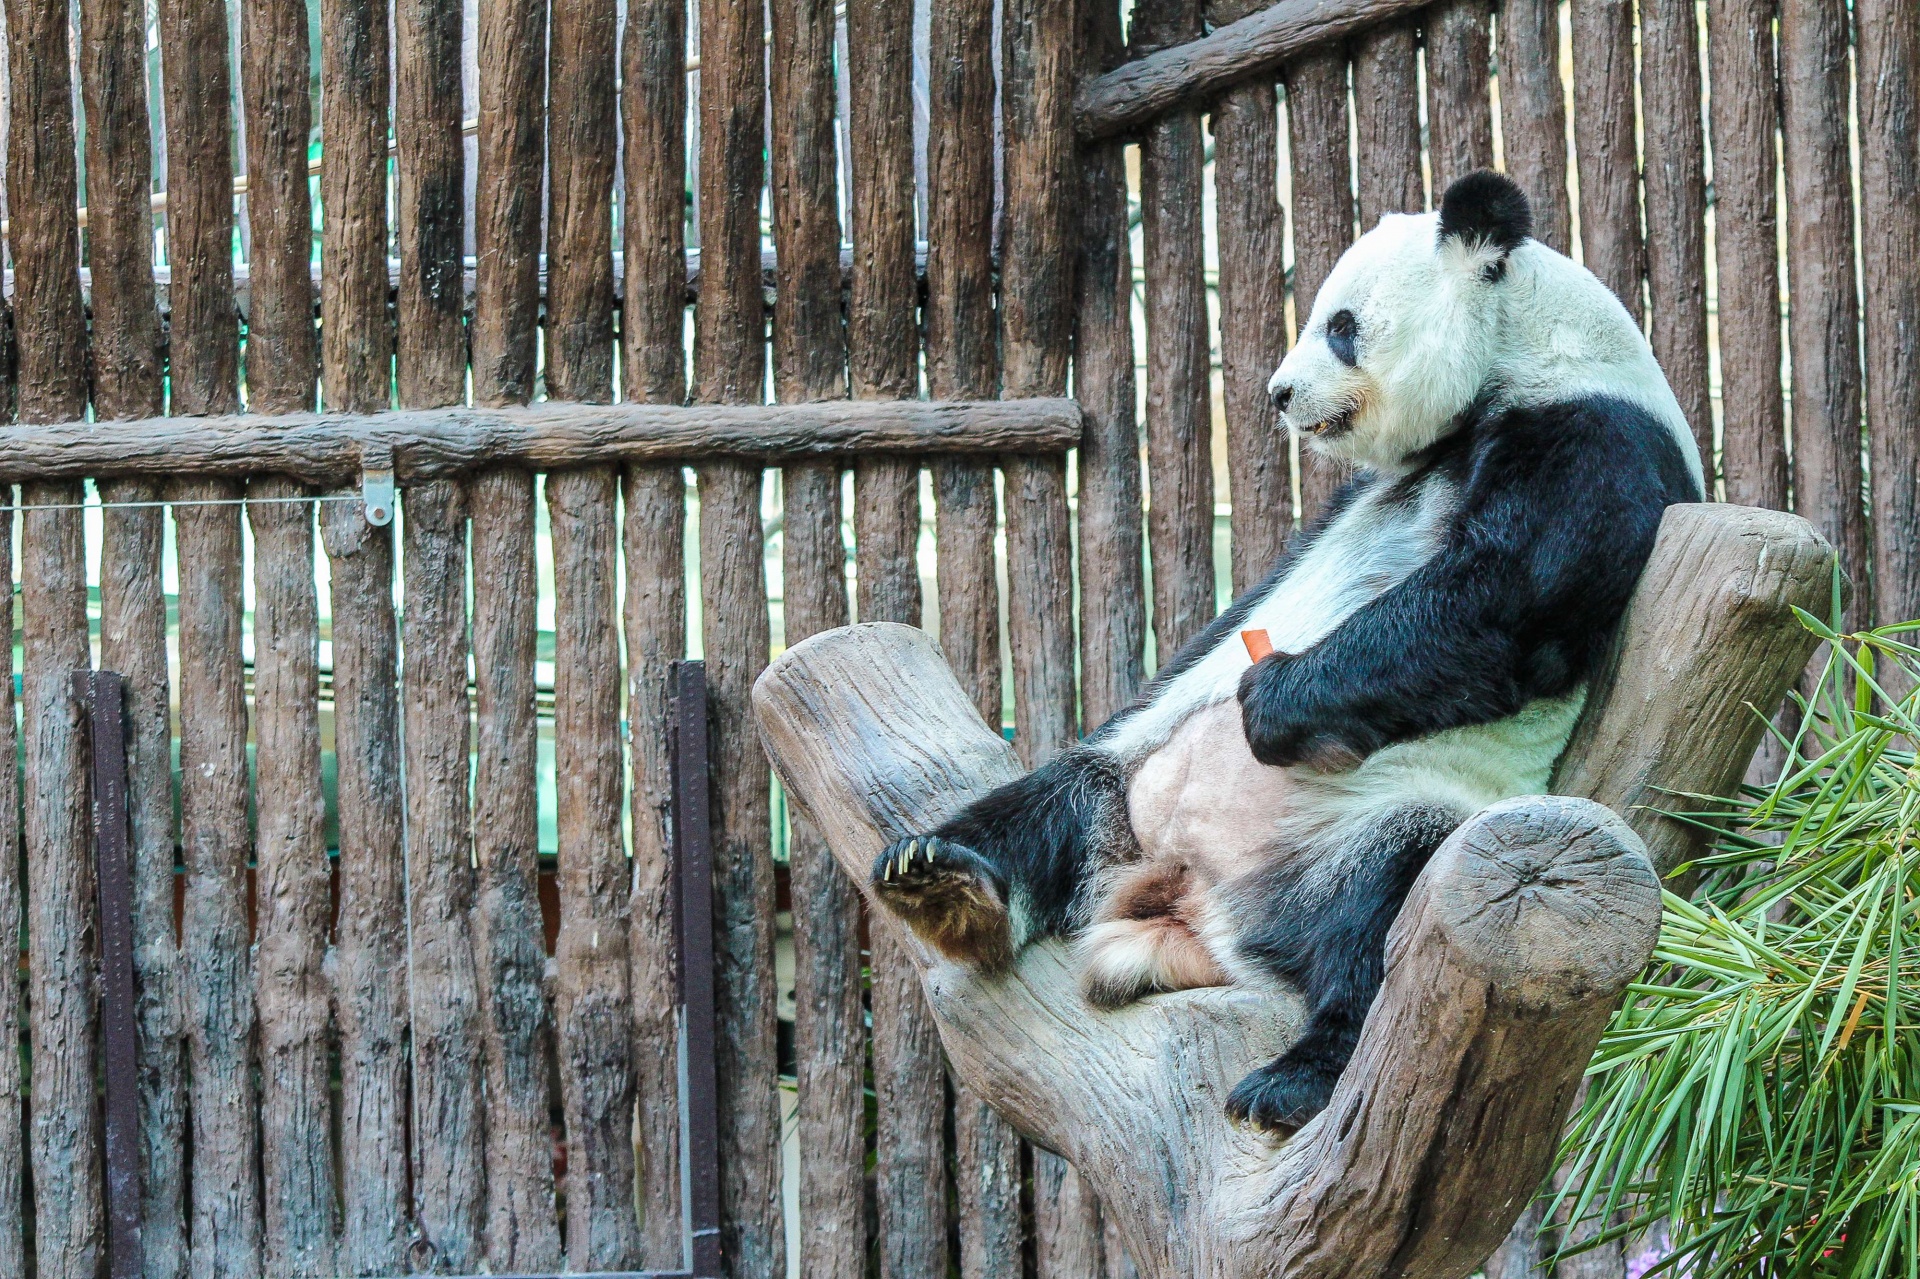 Panda in ChiangMai Zoo, Thailand